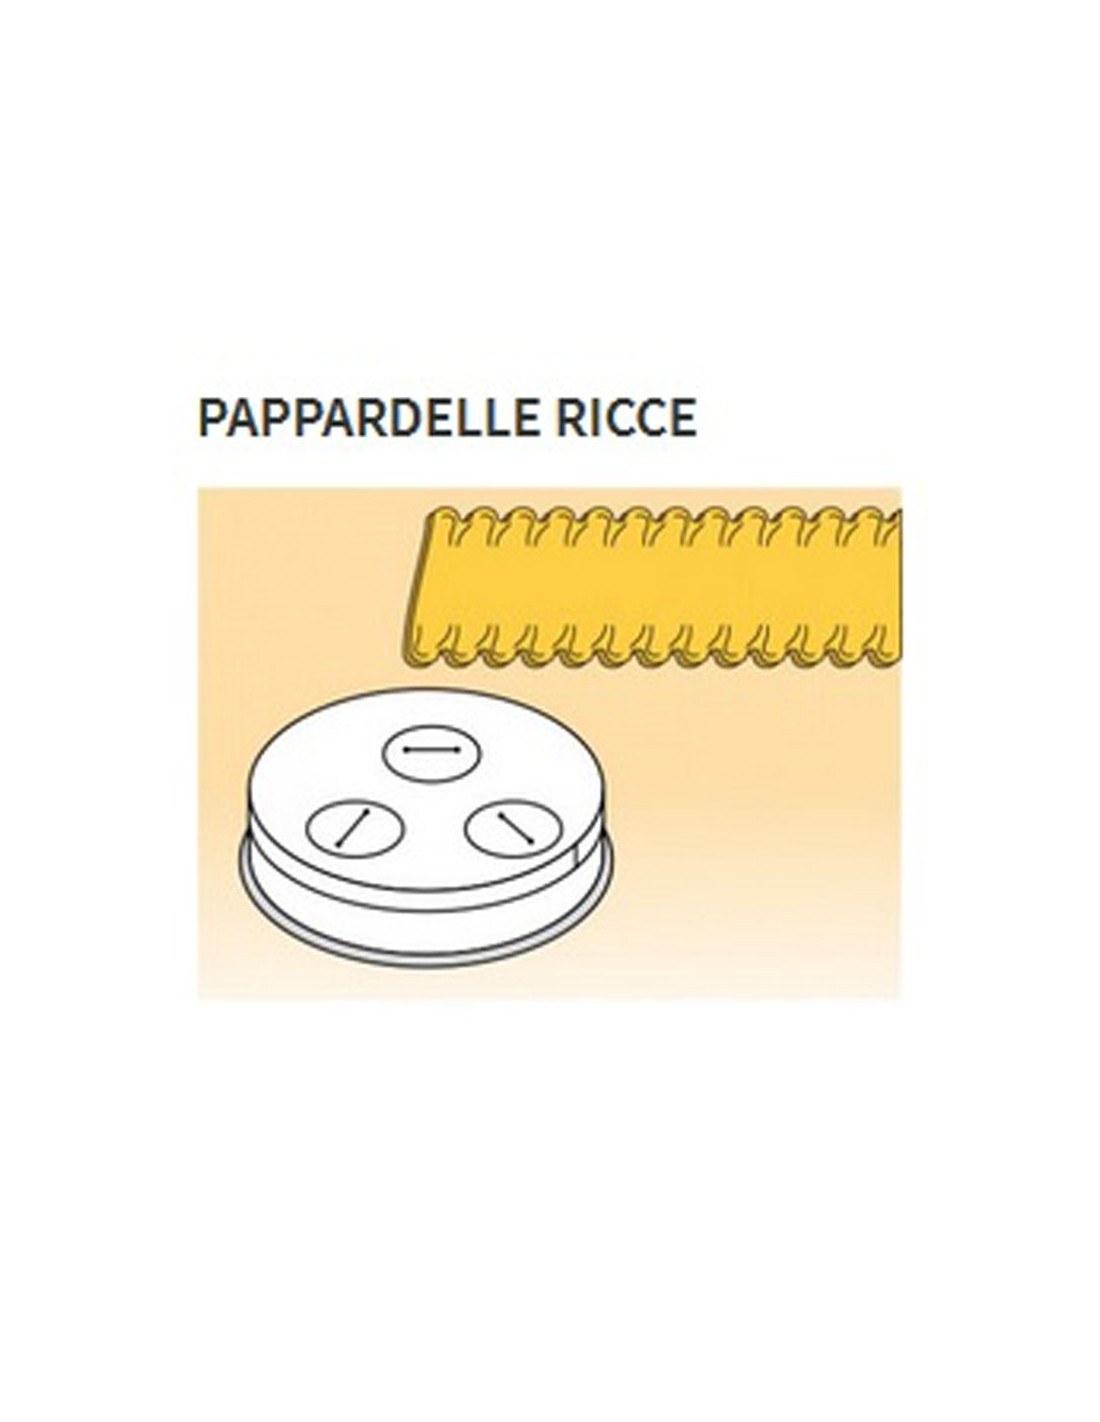 Matrices de aleación de latón de varias formas - Bronce - Para máquina de pasta fresca modelo MPF15 - Pappardelle ricce mm 16